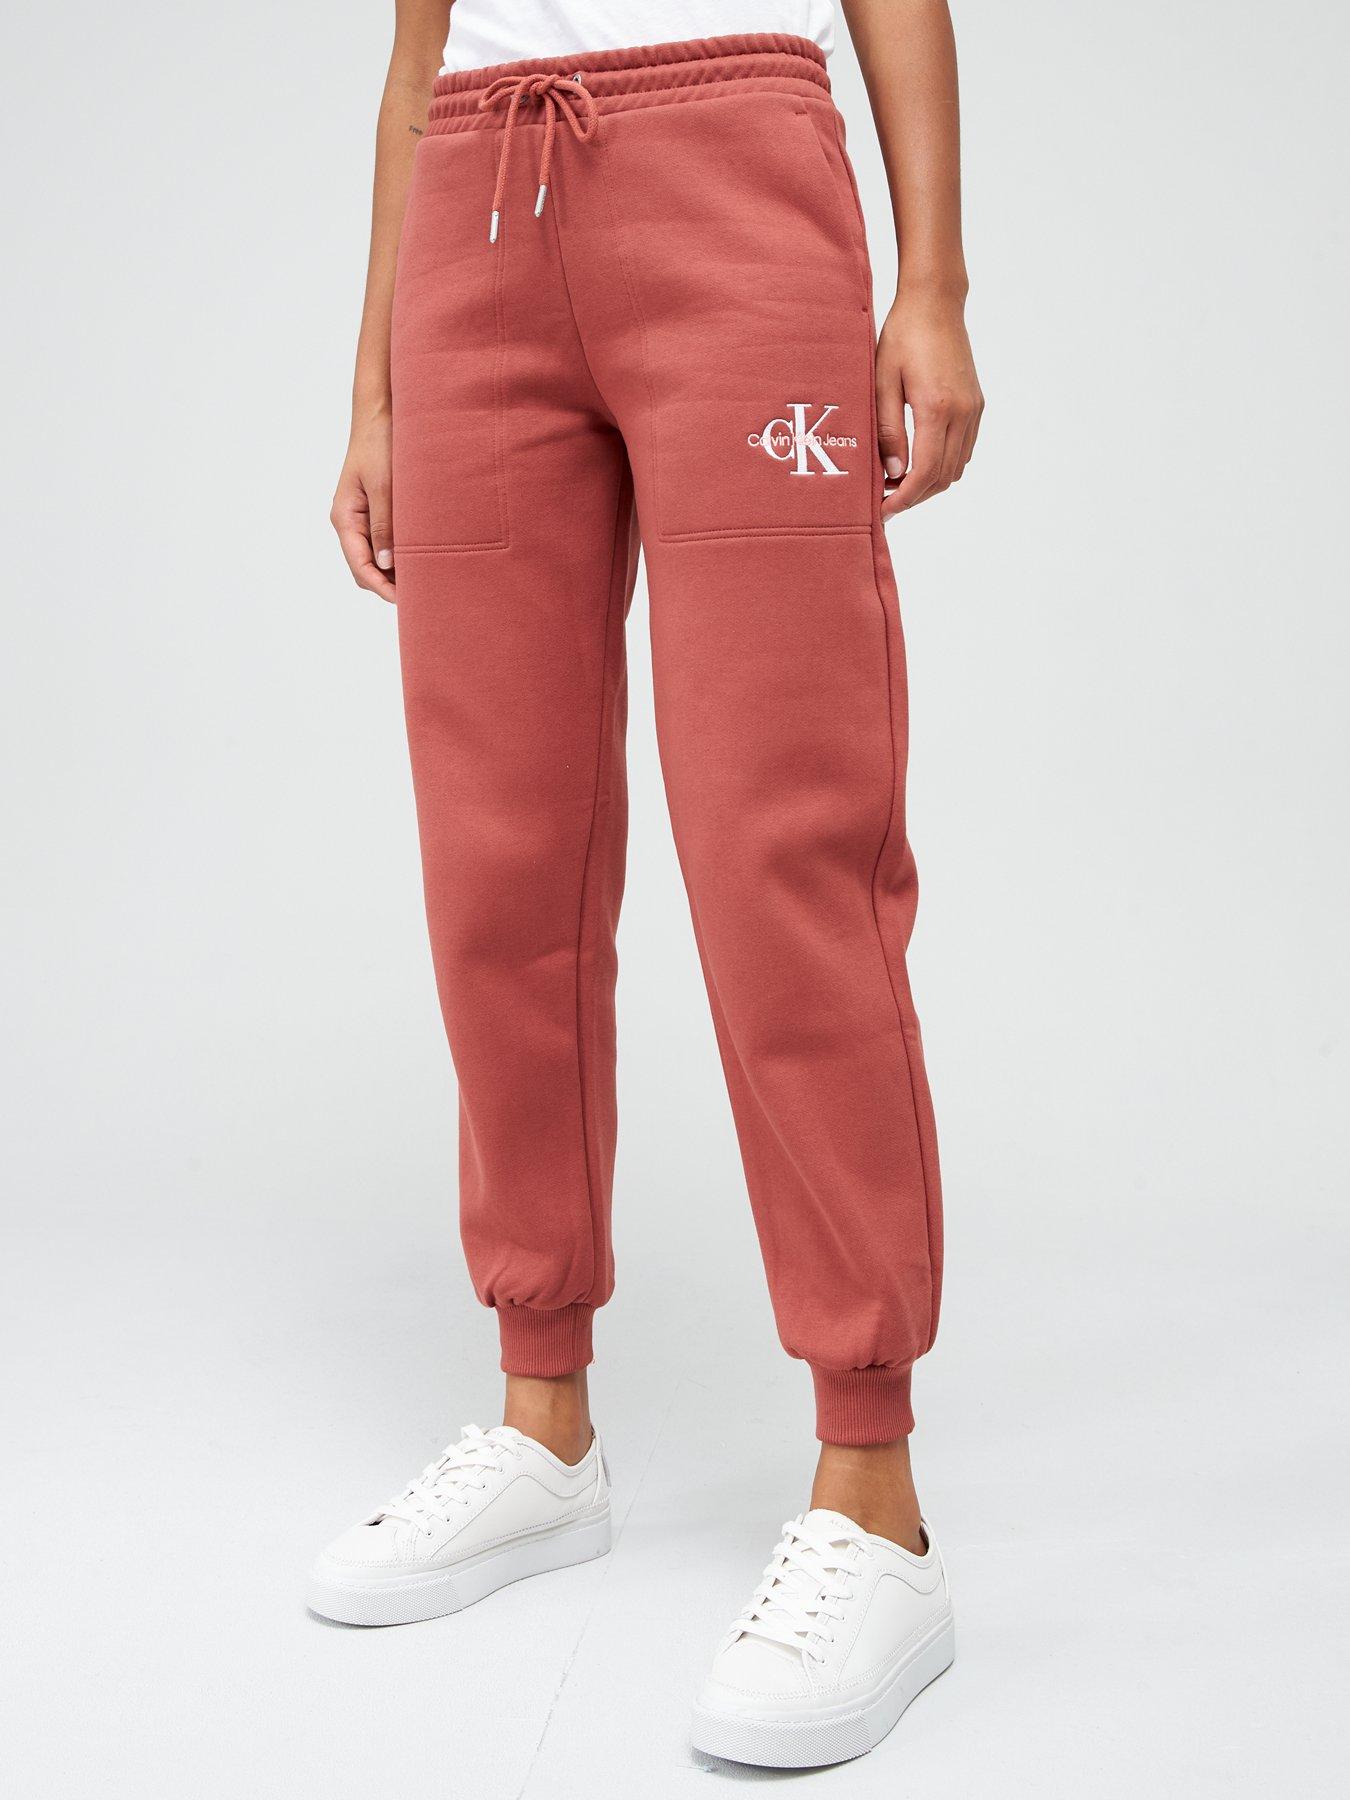 Fashion Men's Underwear Calvin Klein calvin klein Track Zip Top Red/Rouge  Size Large Cost £130. 